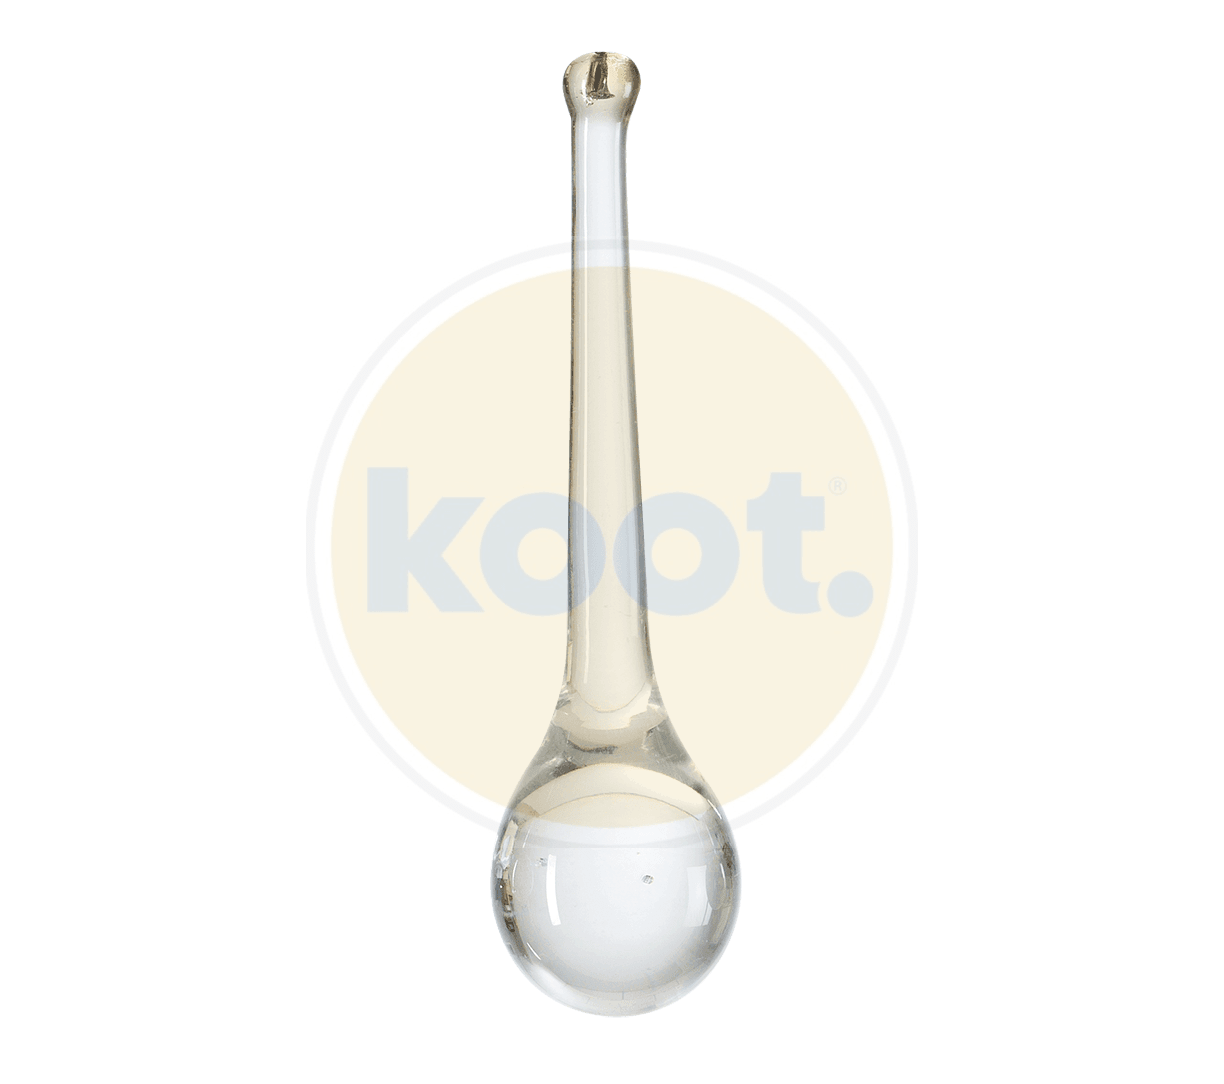 Serip - Bijout Bowl hanglamp - KOOT